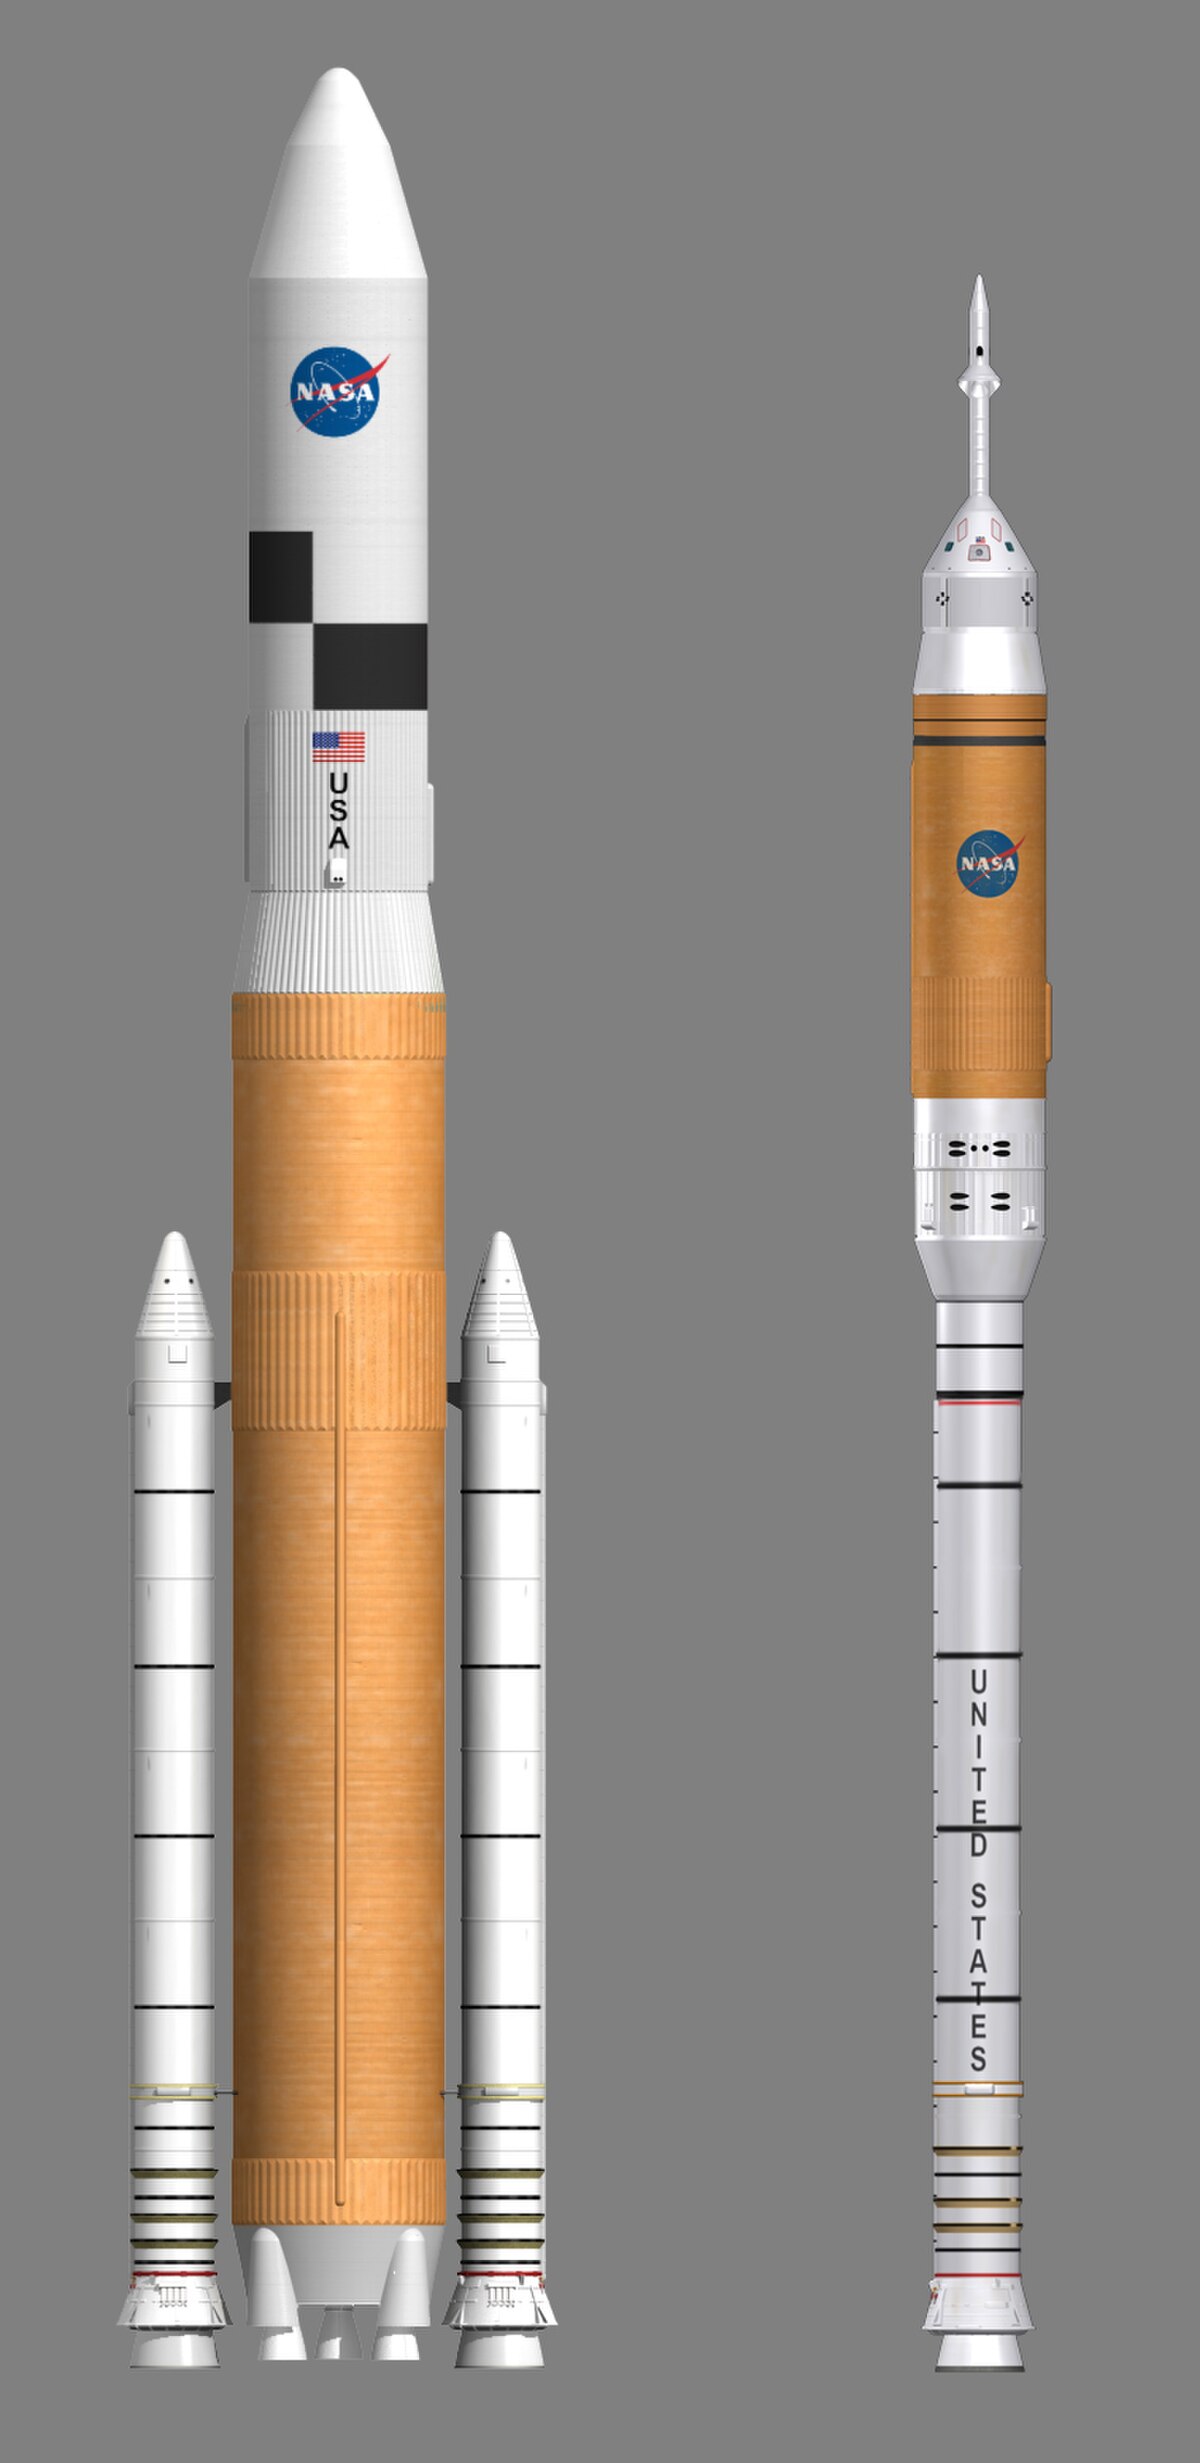 Les nouvelles fusées Ares qui seront lancées pour retourner sur la Lune.